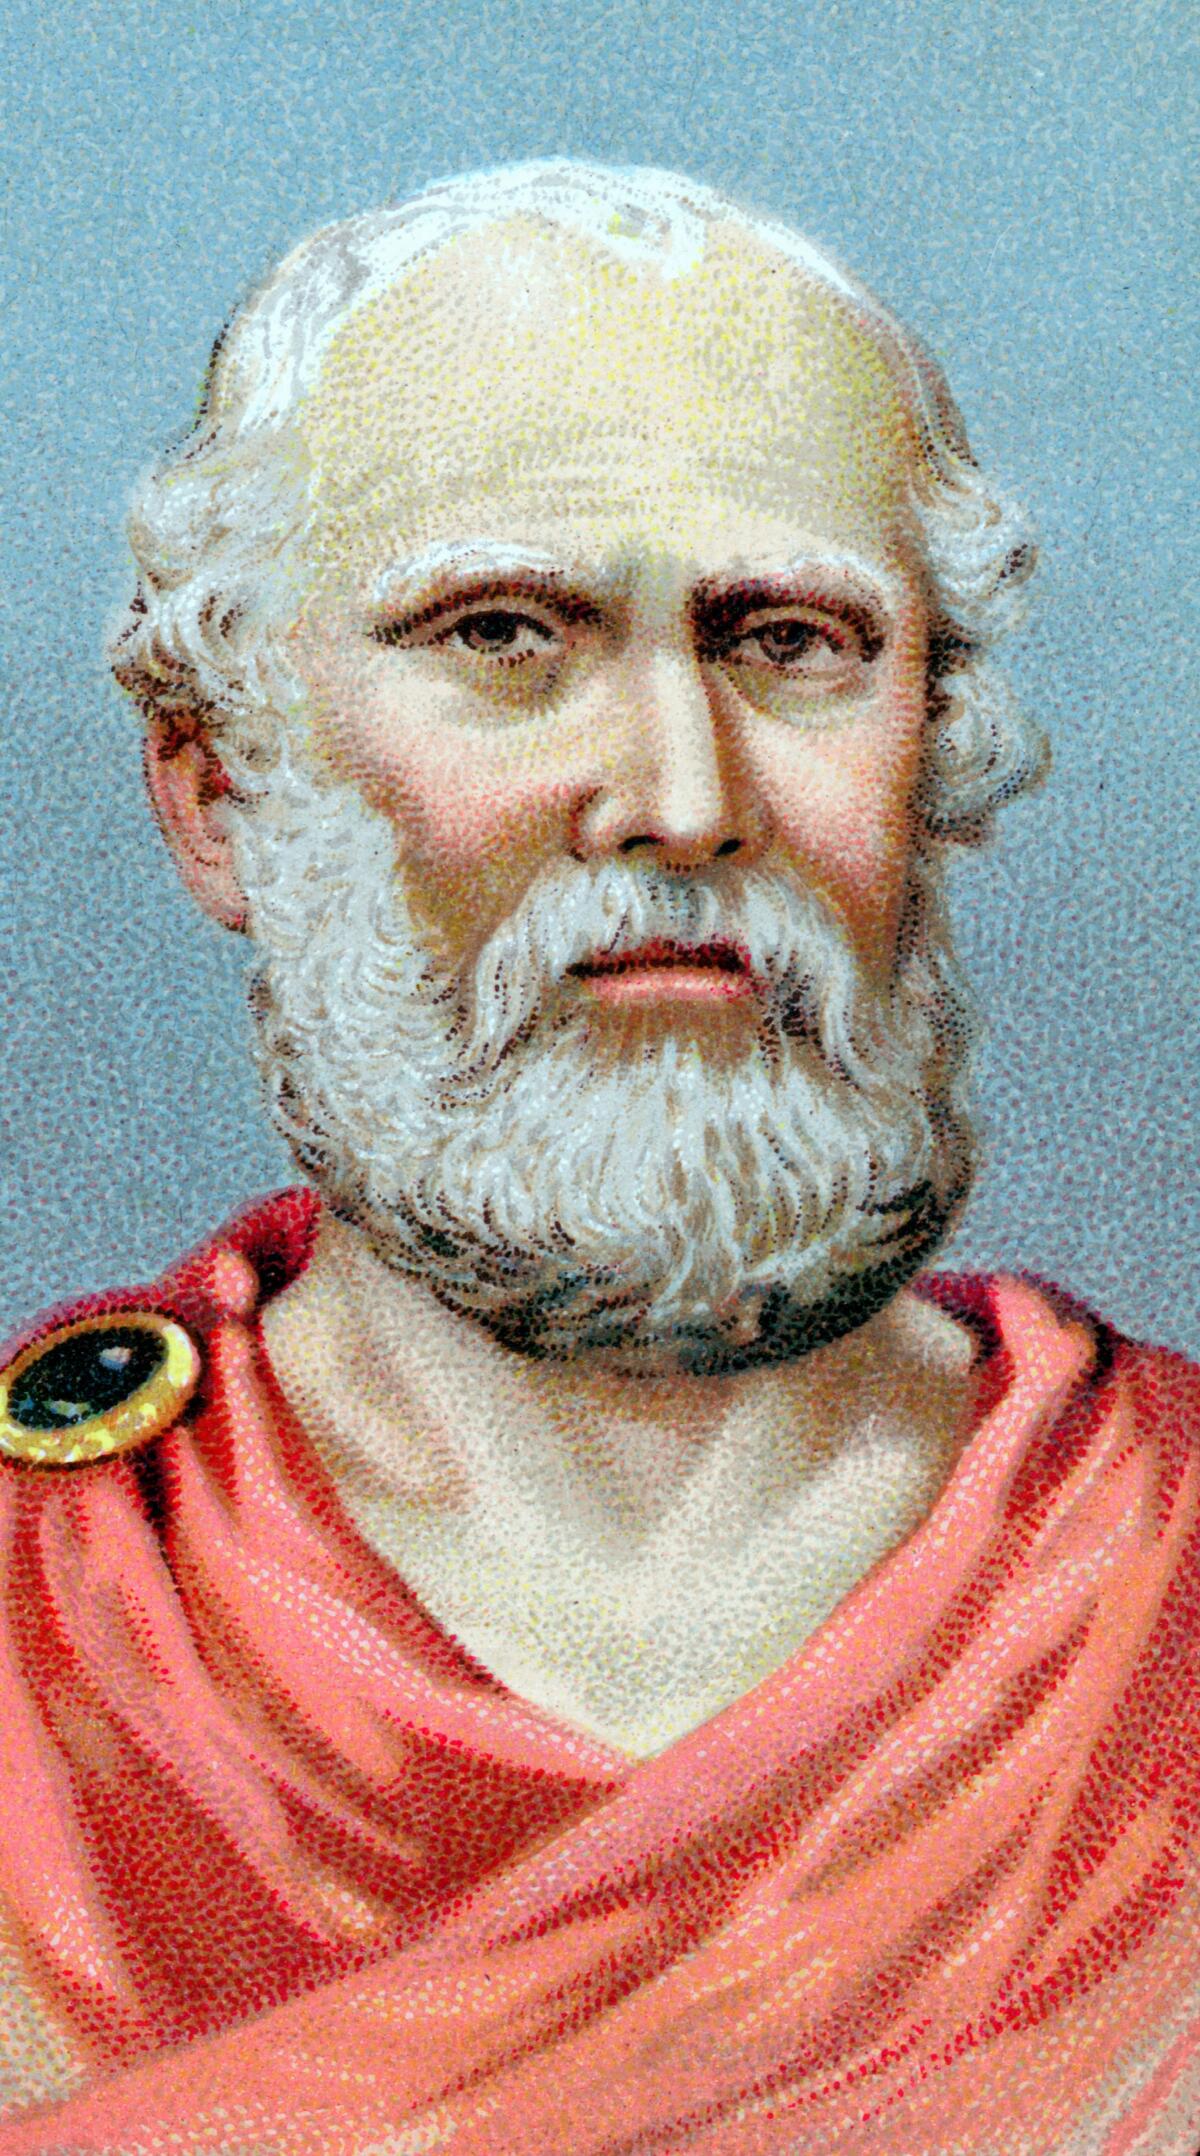 Plato c. 428 - c. 348 B.C.E.